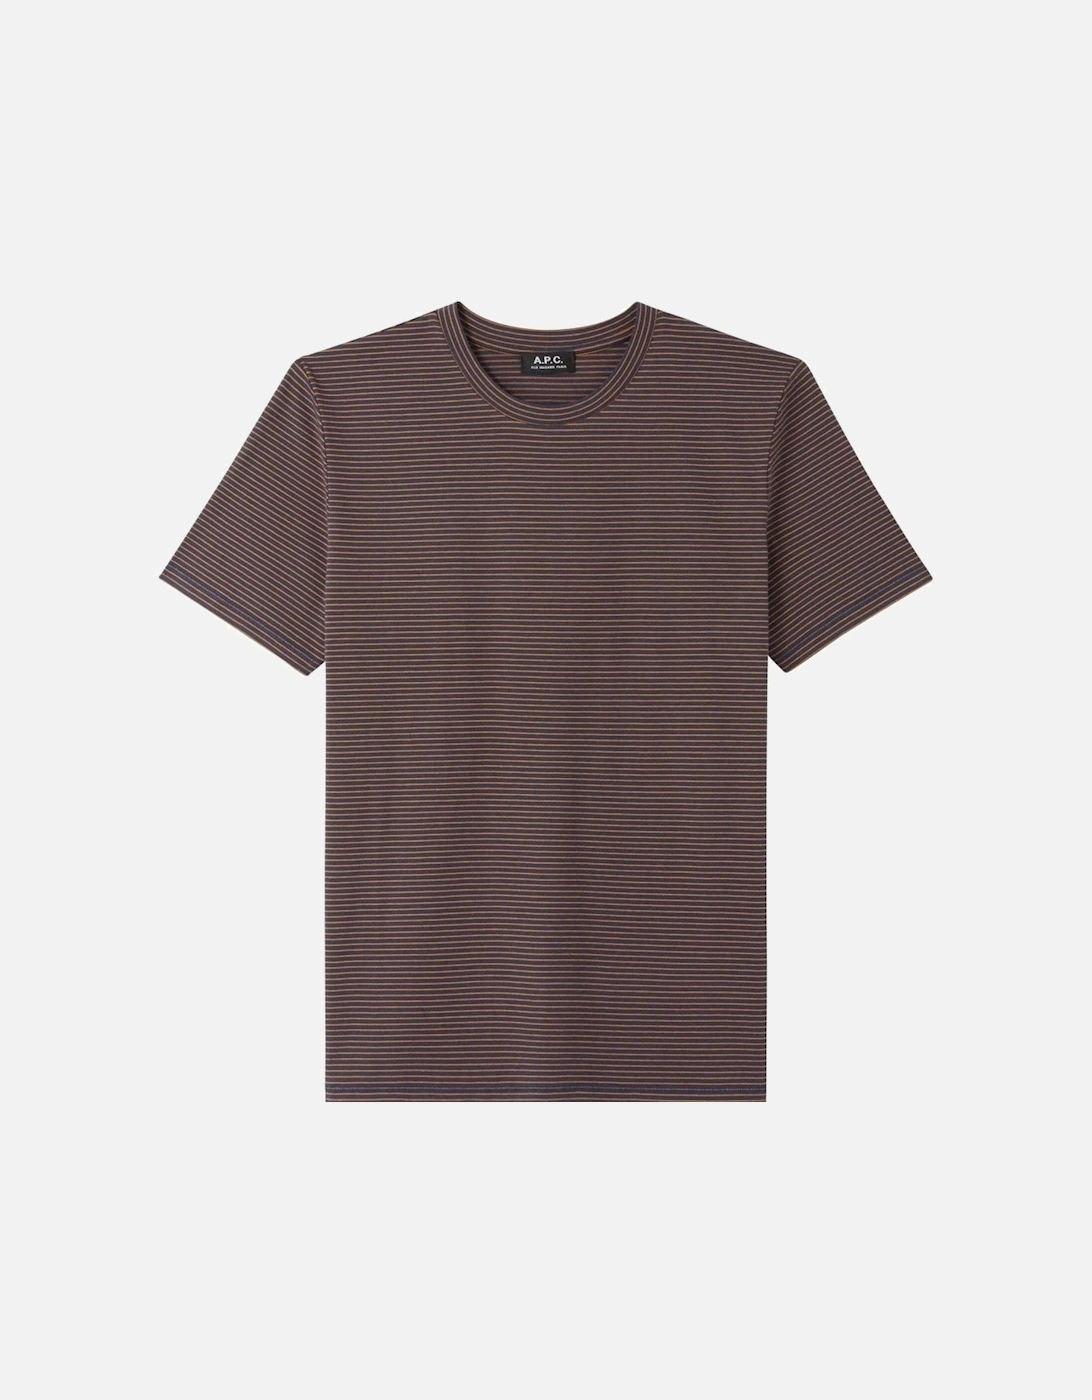 A.P.C Men's Aurelian Stripe Cotton T-shirt Brown, 2 of 1